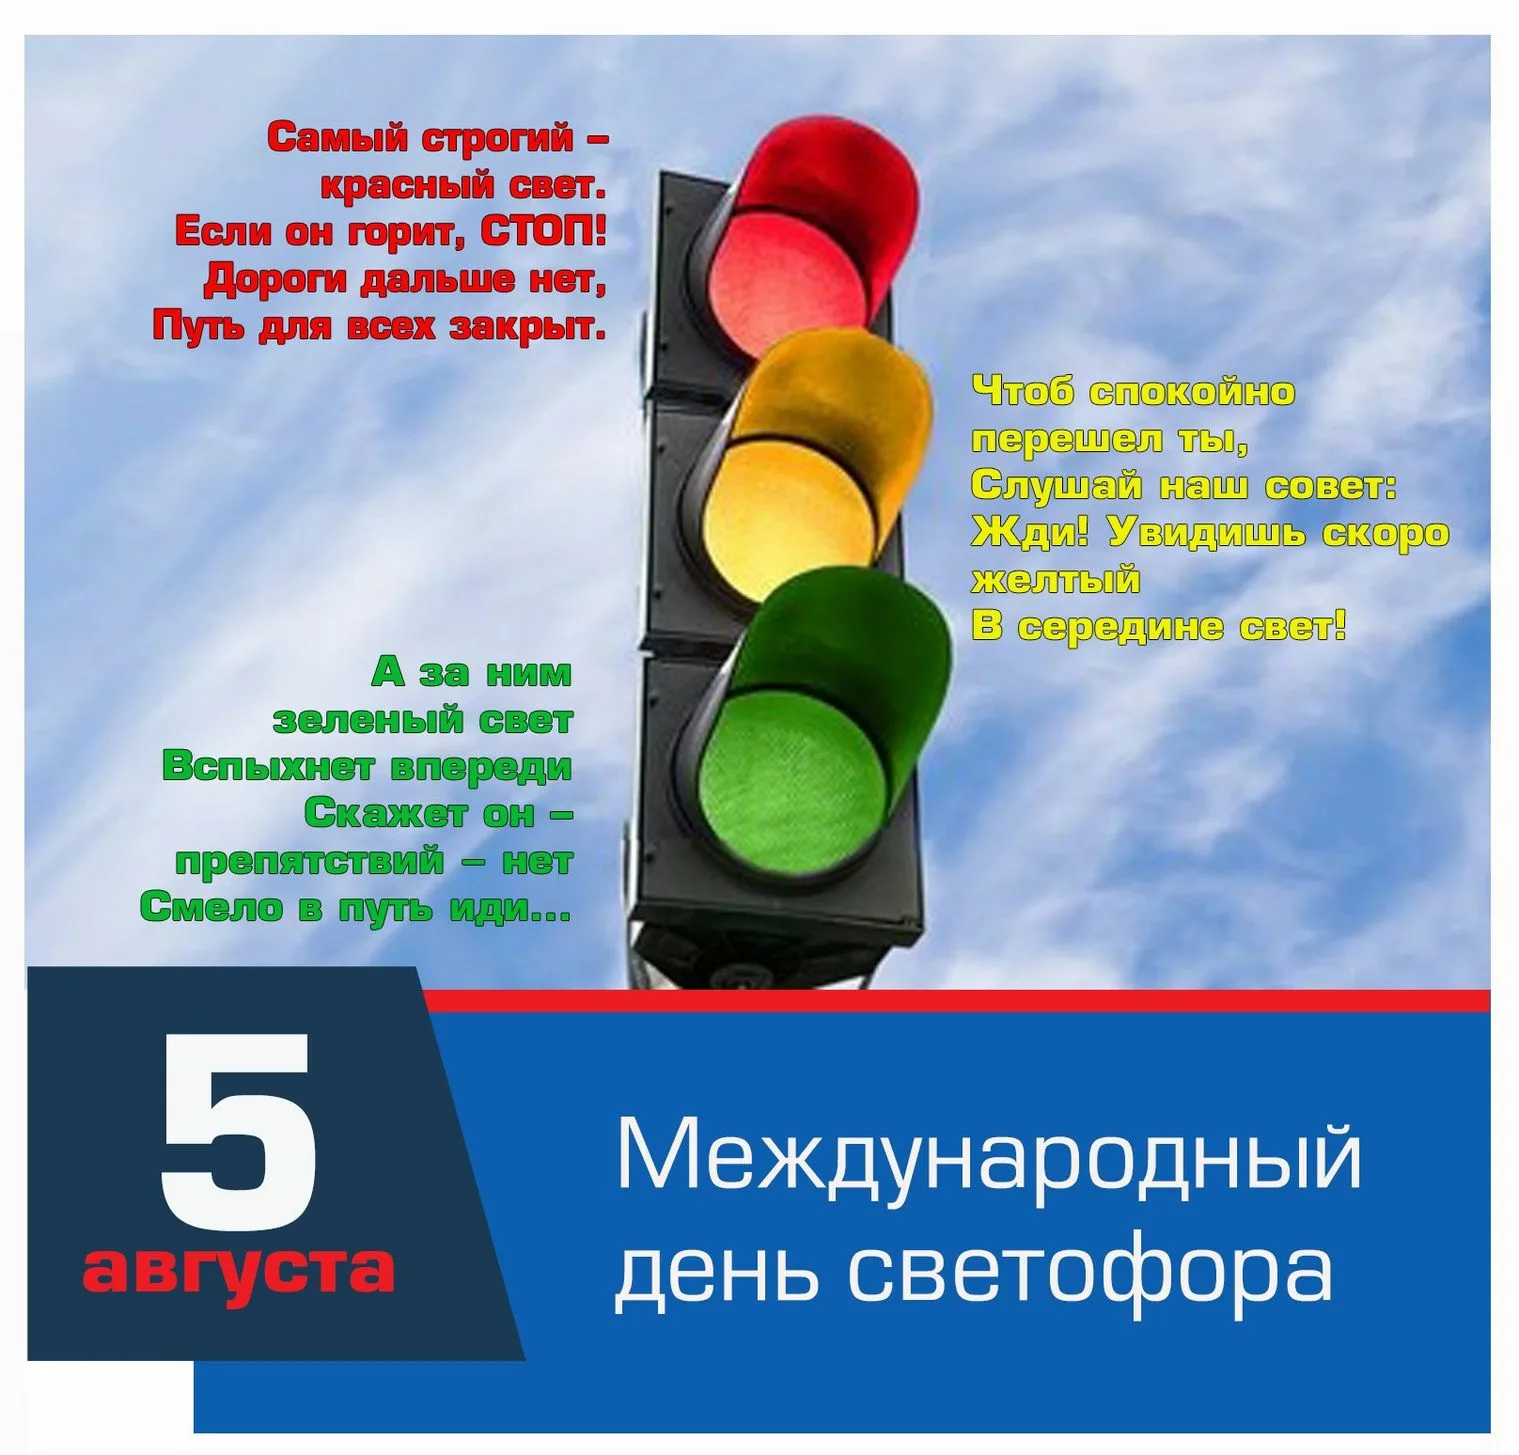 Фото International traffic light day #4